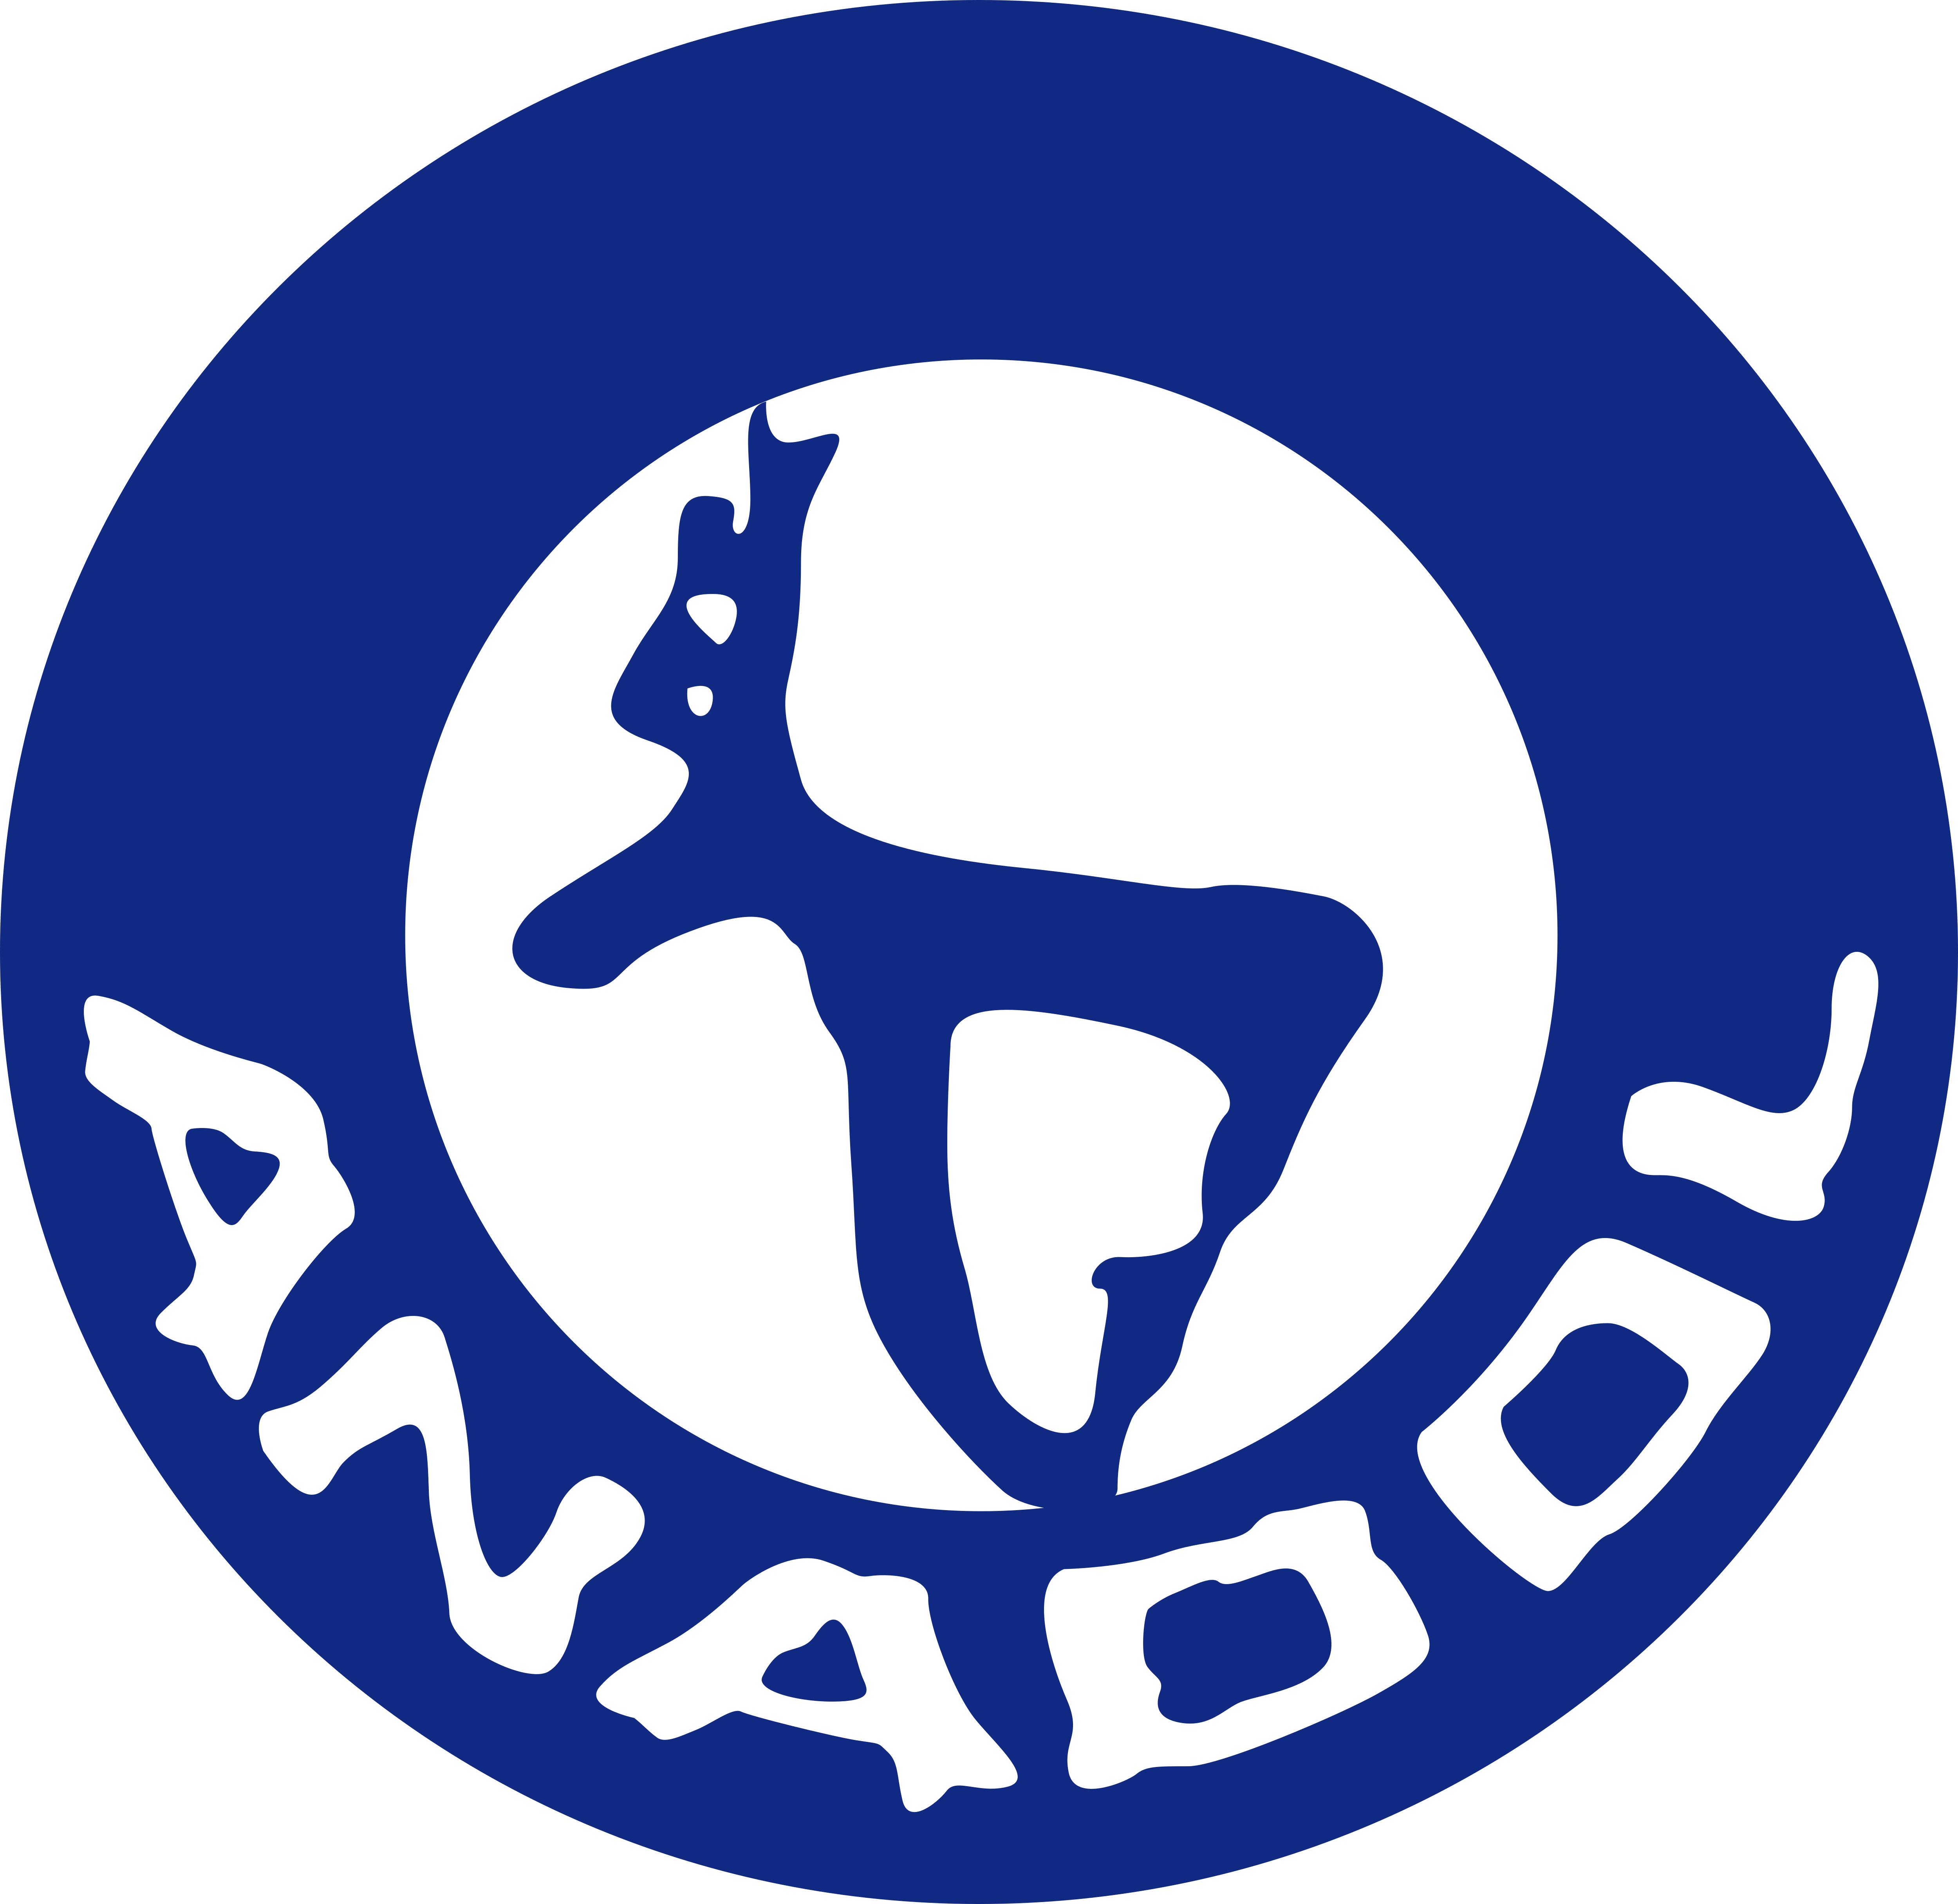 Anadol – Logos Download - Amazon Smile Logo Vector